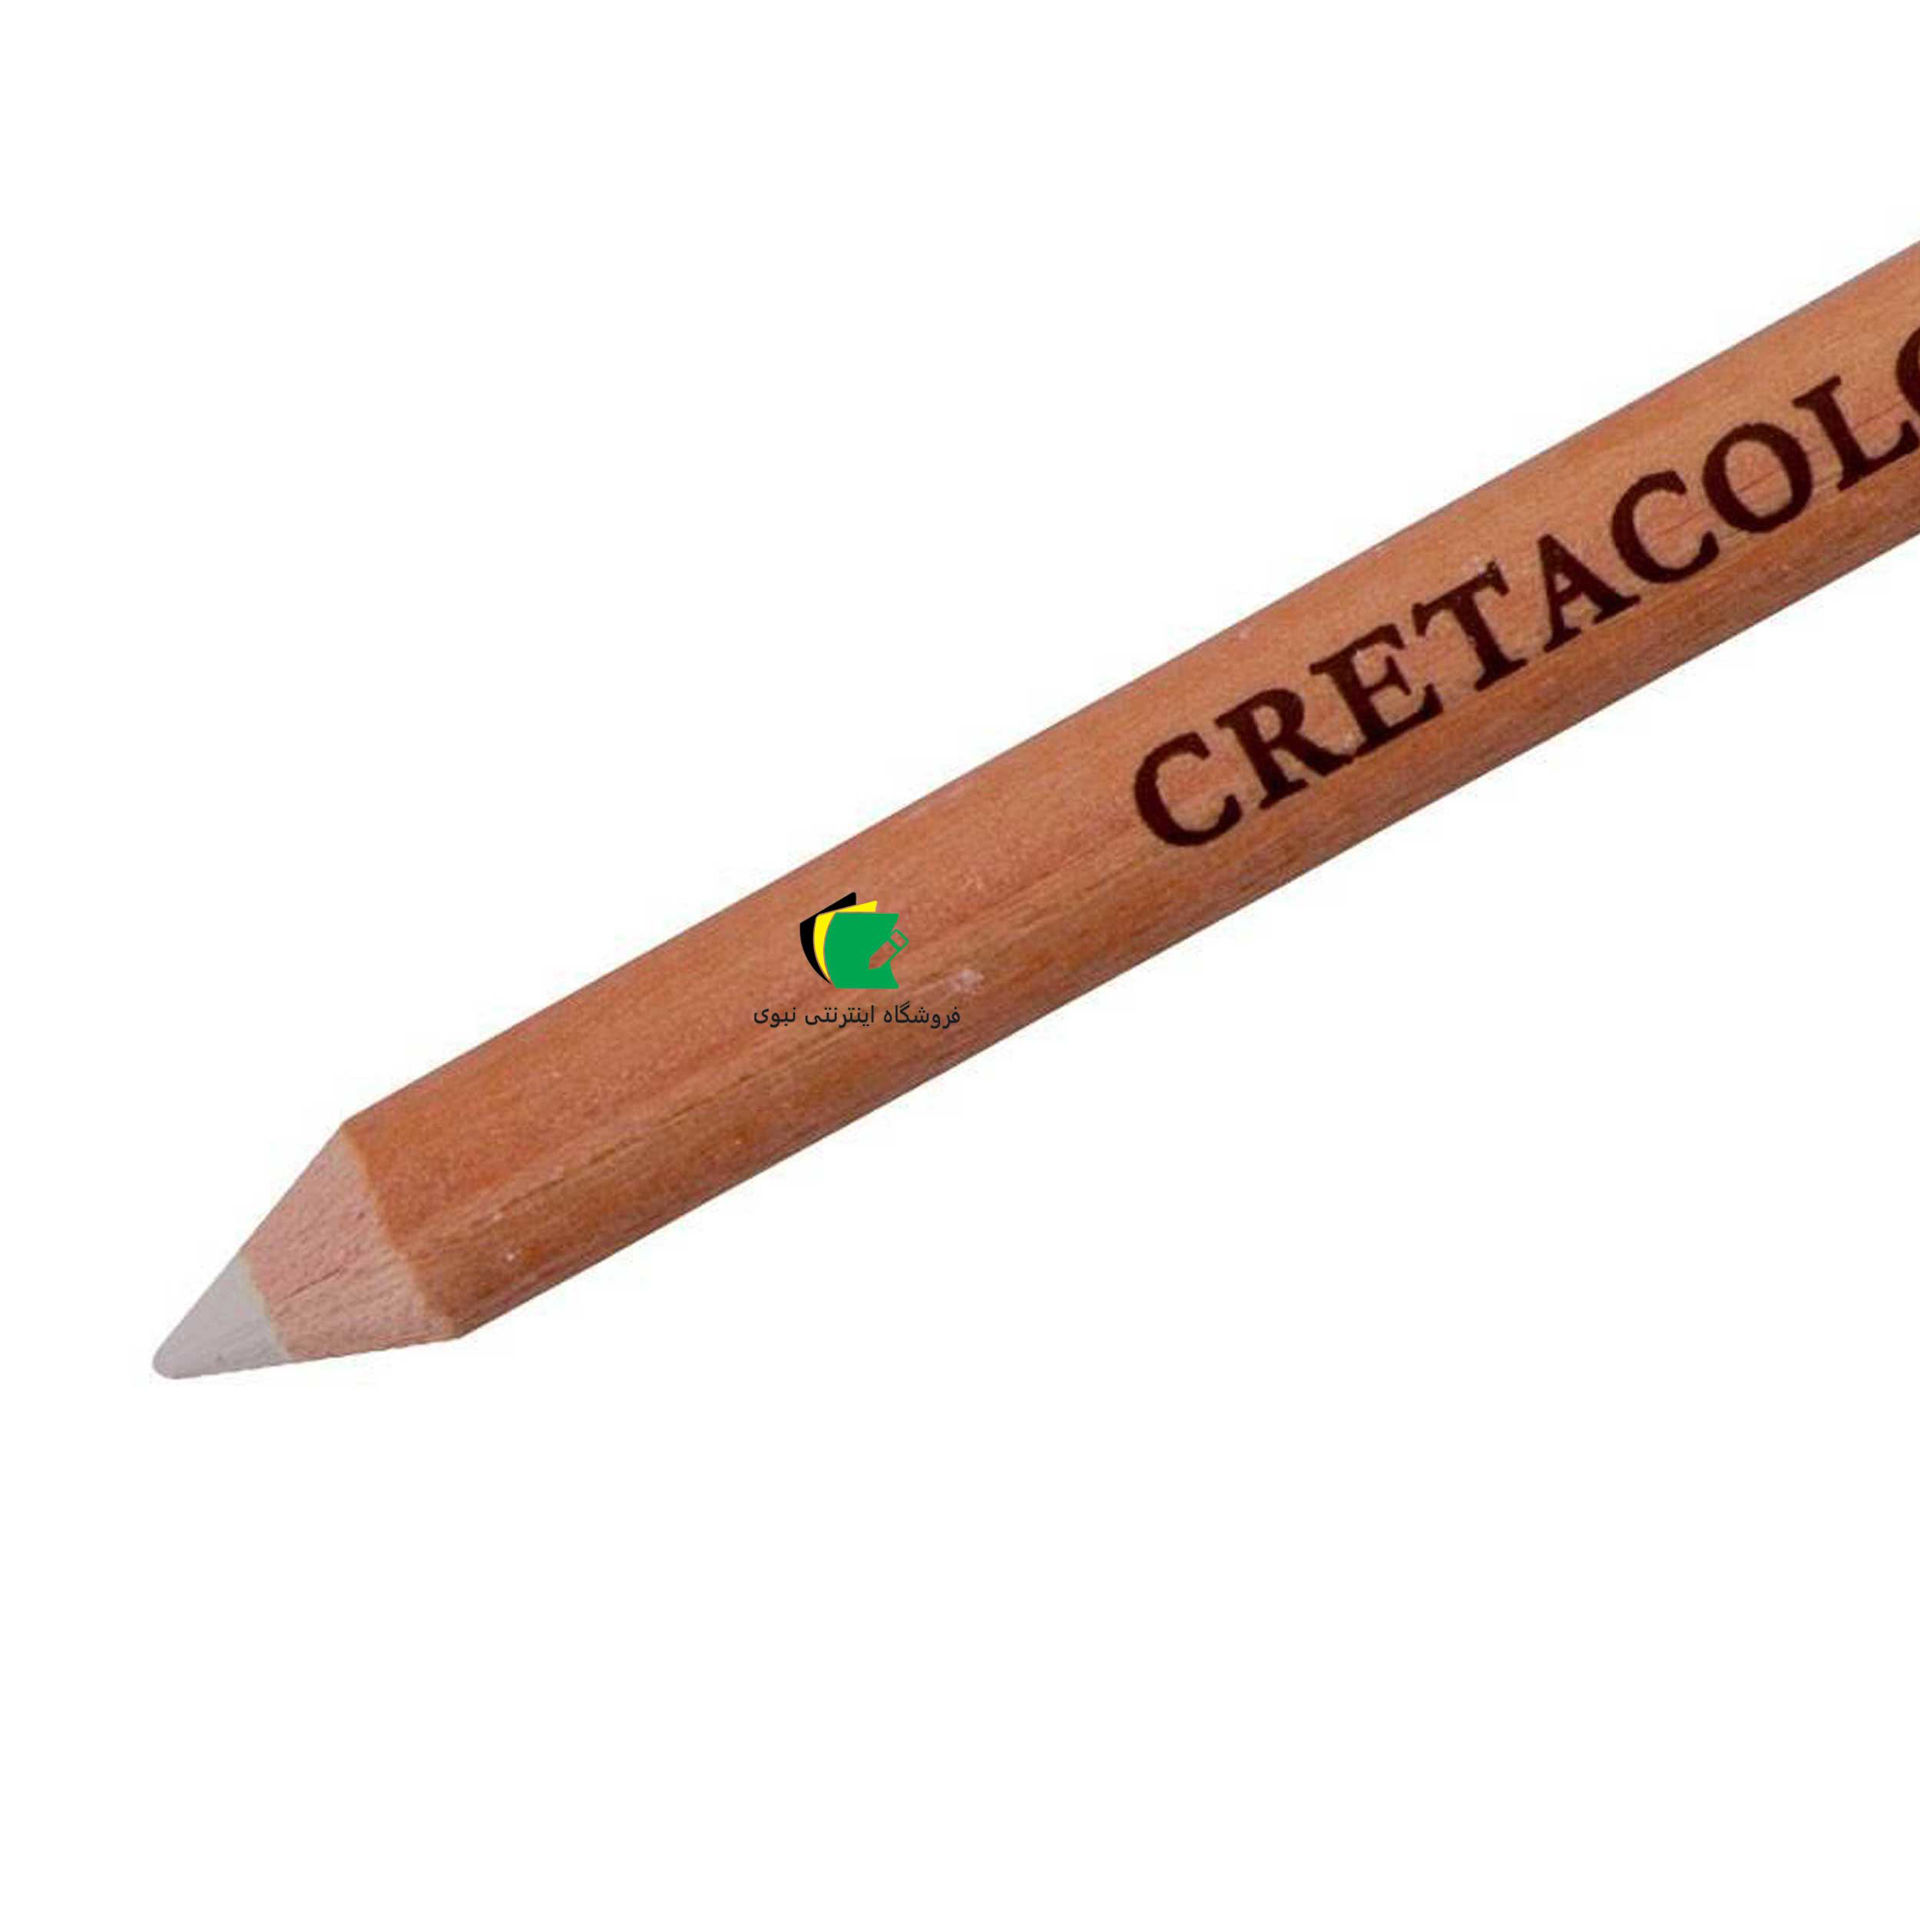 مداد کنته کرتاکالر مدل مداد کنته سفید خشک نرم کد 46151